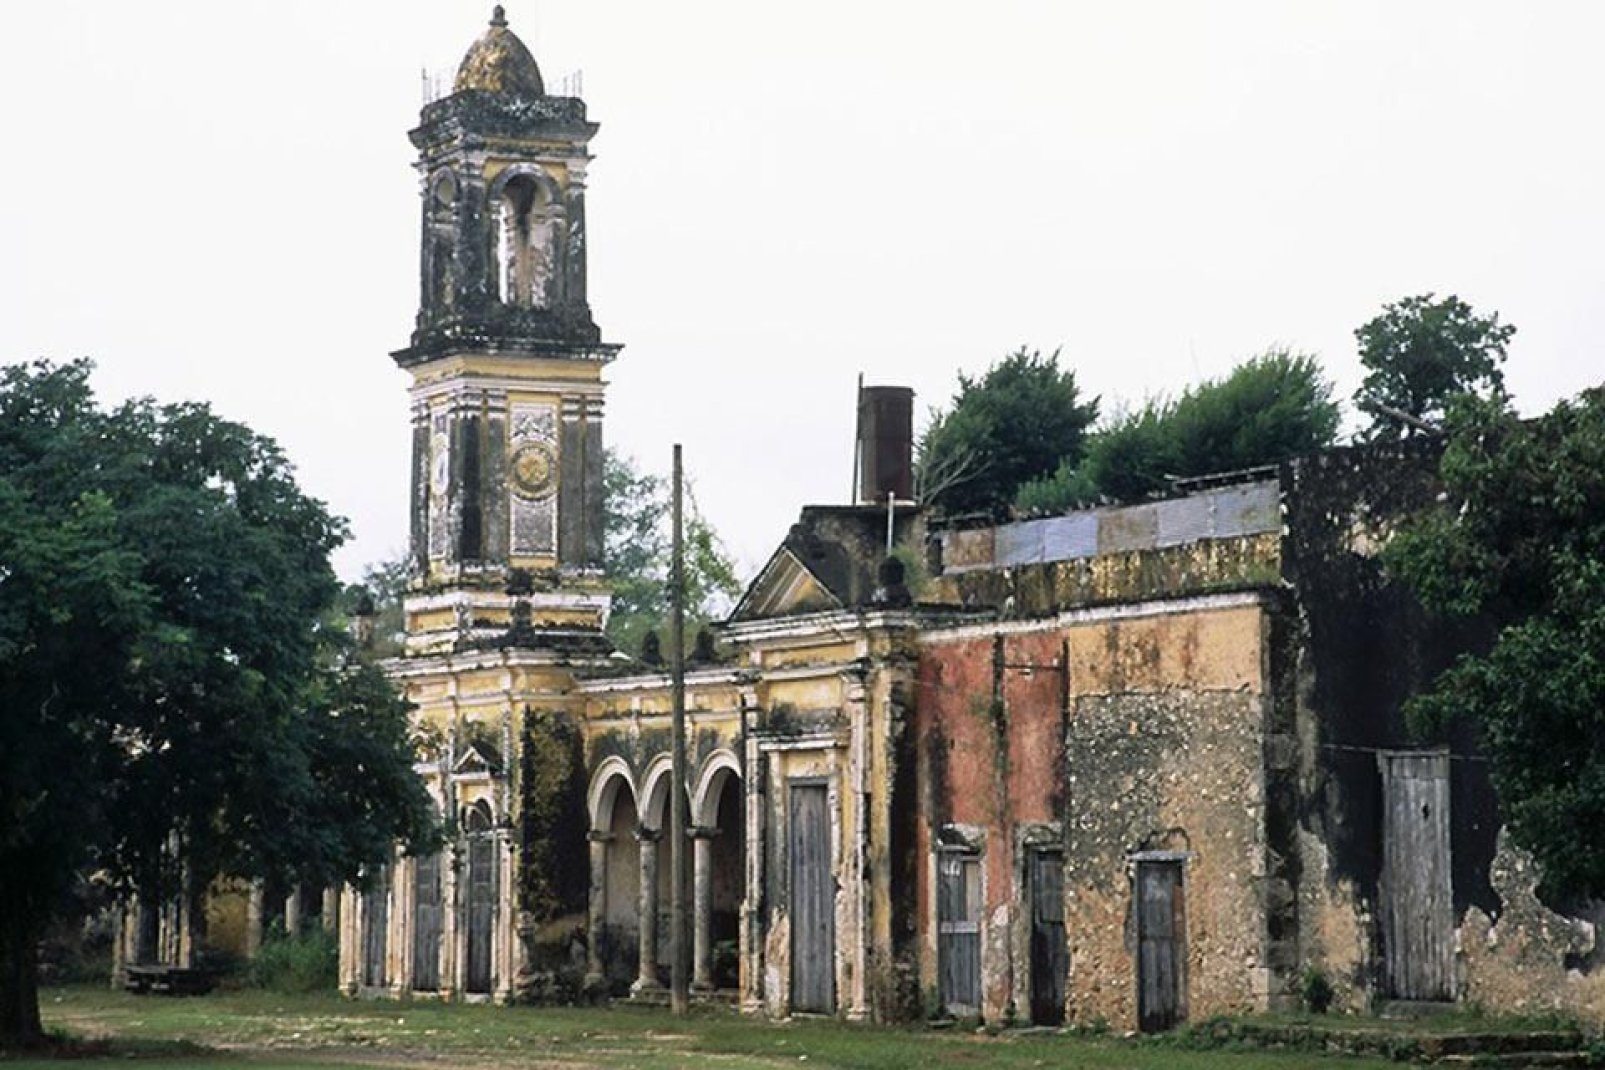 C'est l'une des premières églises construites dans la région par les missionnaires jésuites, après la conquête espagnole.